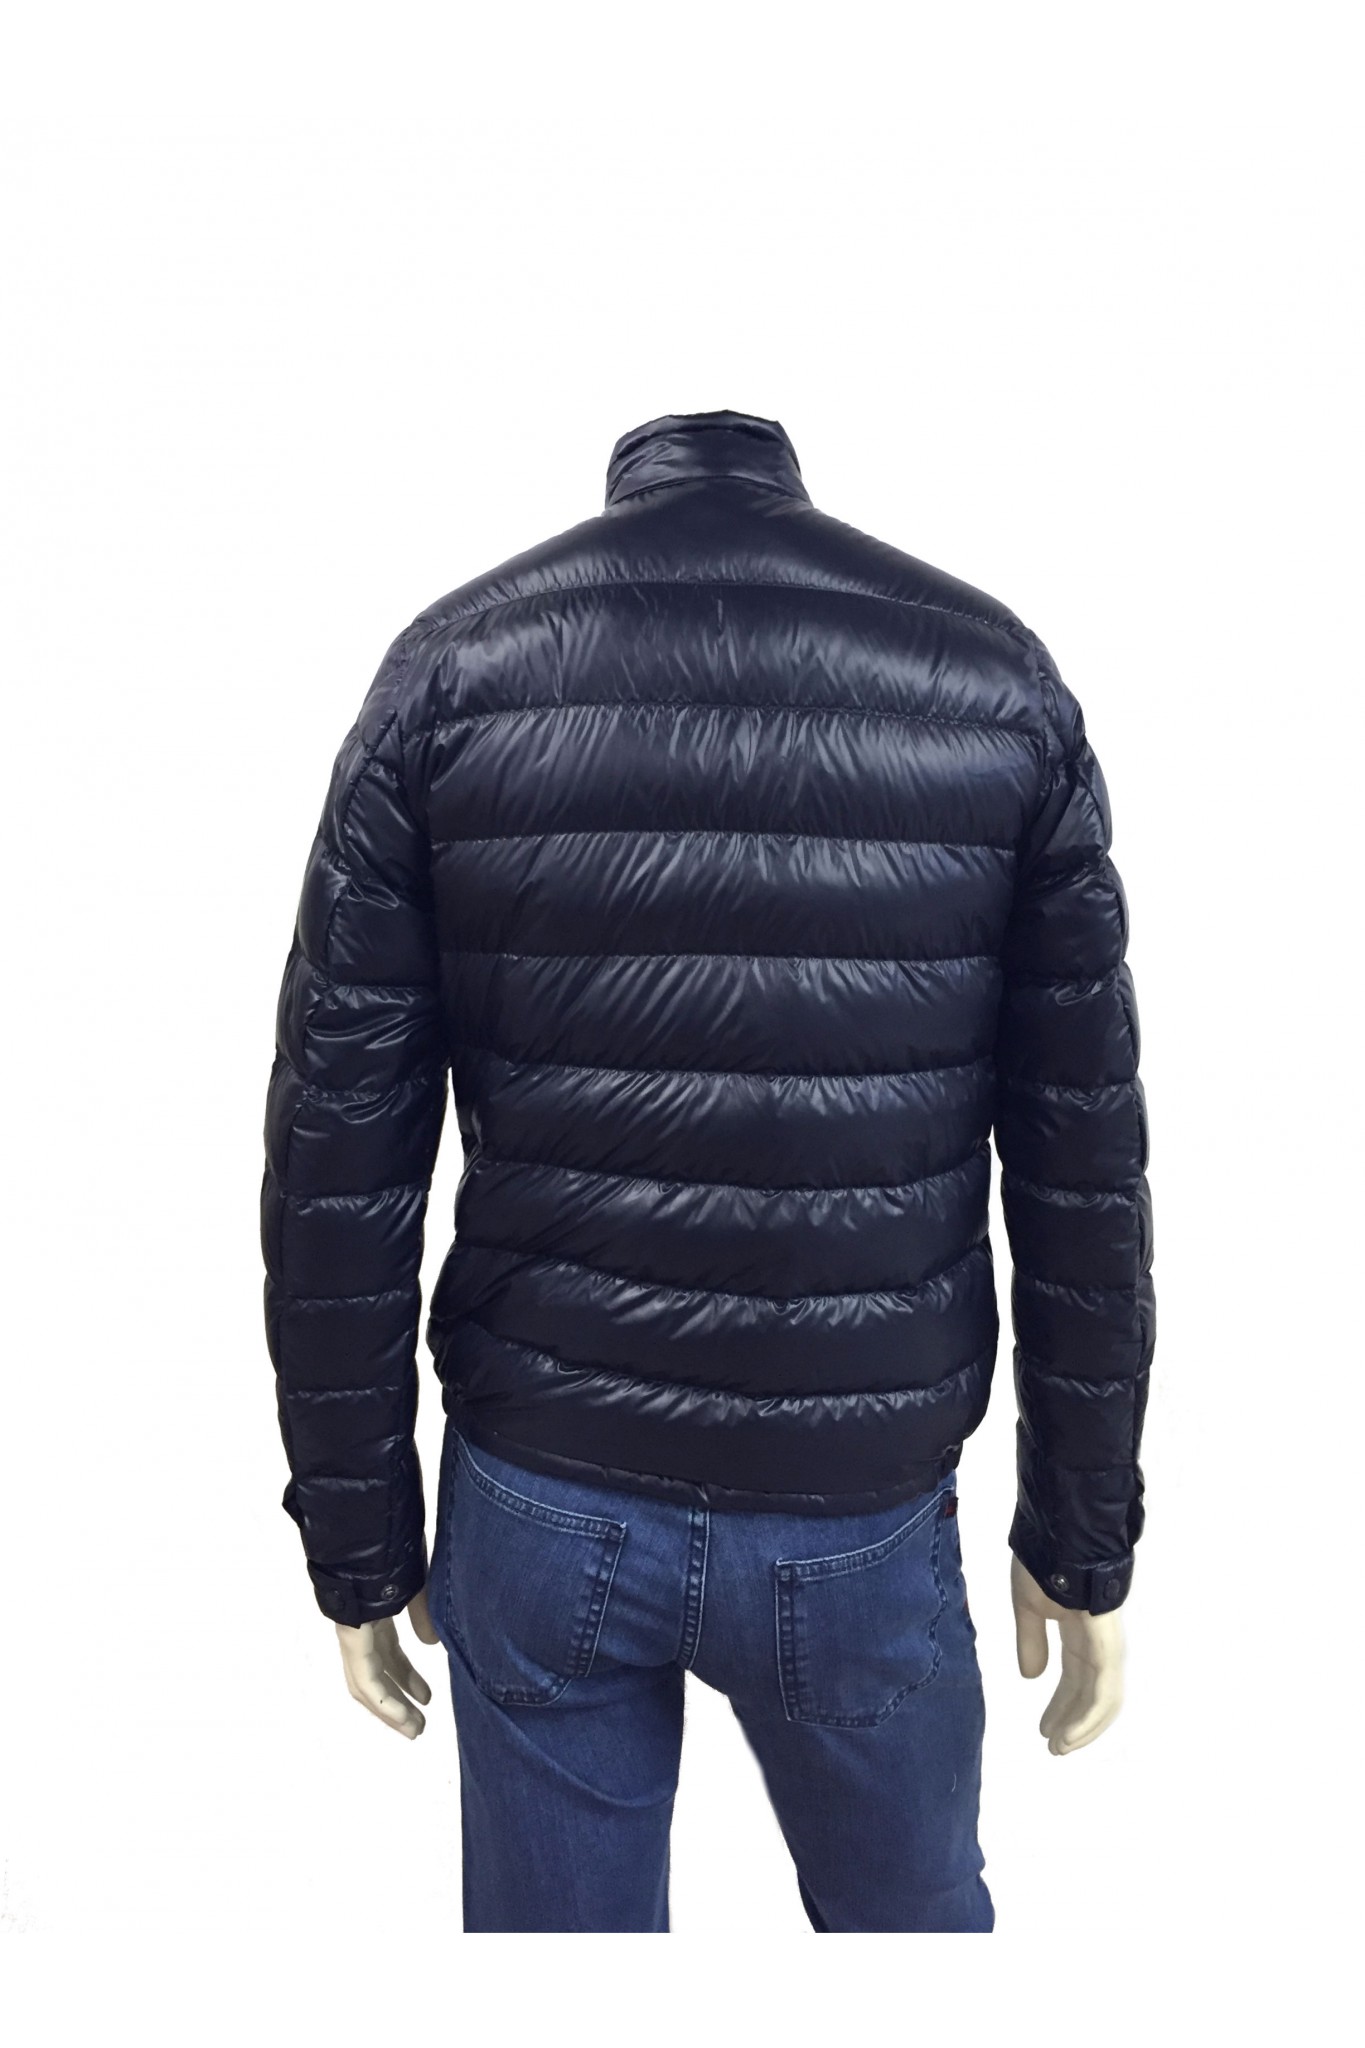 Shop online blue Moncler Acorus down jacket